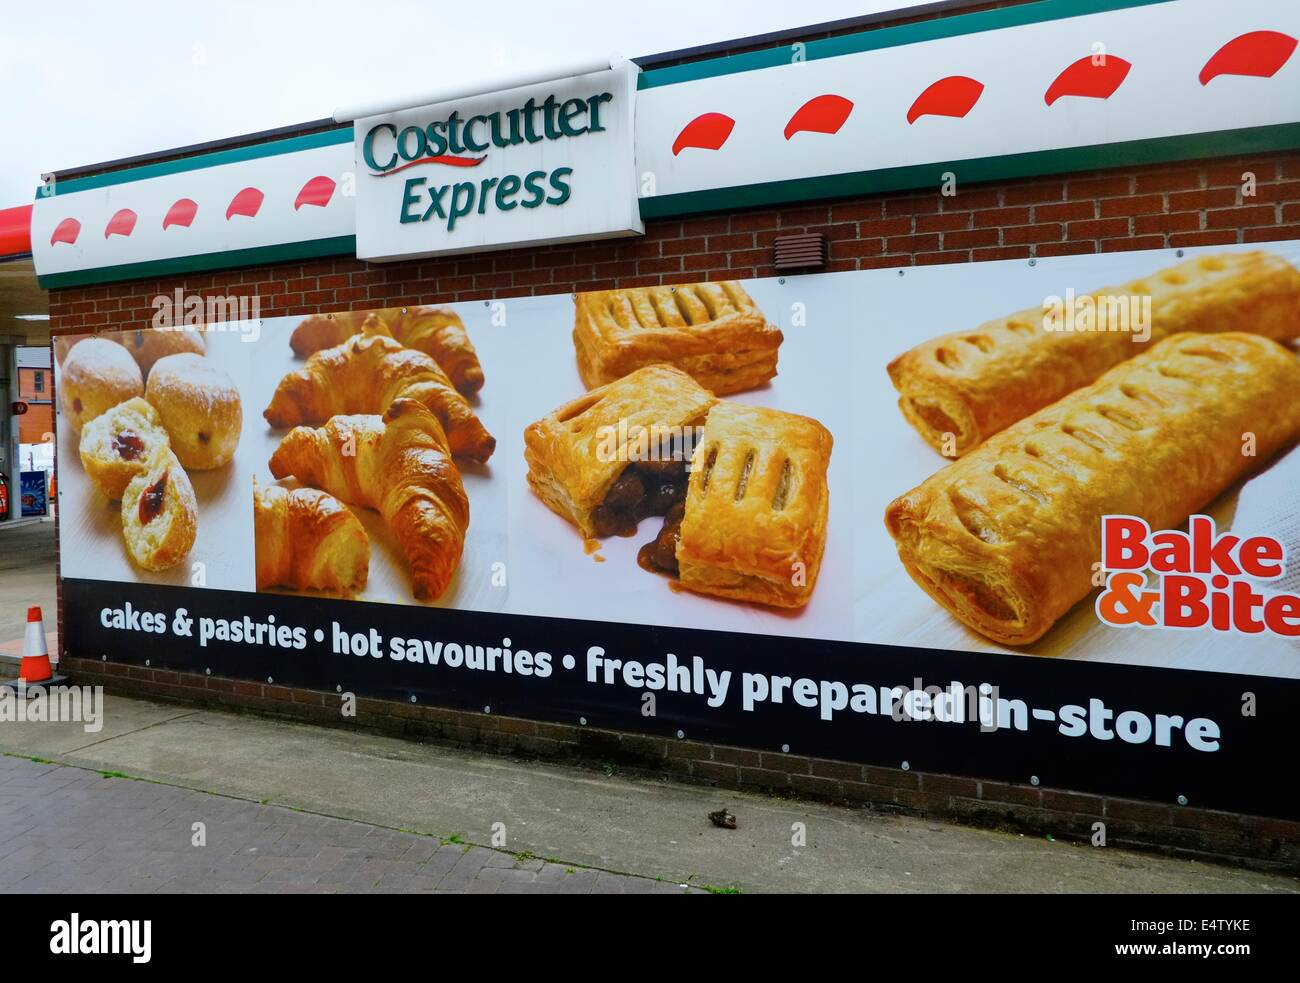 Costcutter express.enorme striscione pubblicitario scheda prodotto preparato di fresco in negozio Derby Inghilterra Regno Unito Foto Stock